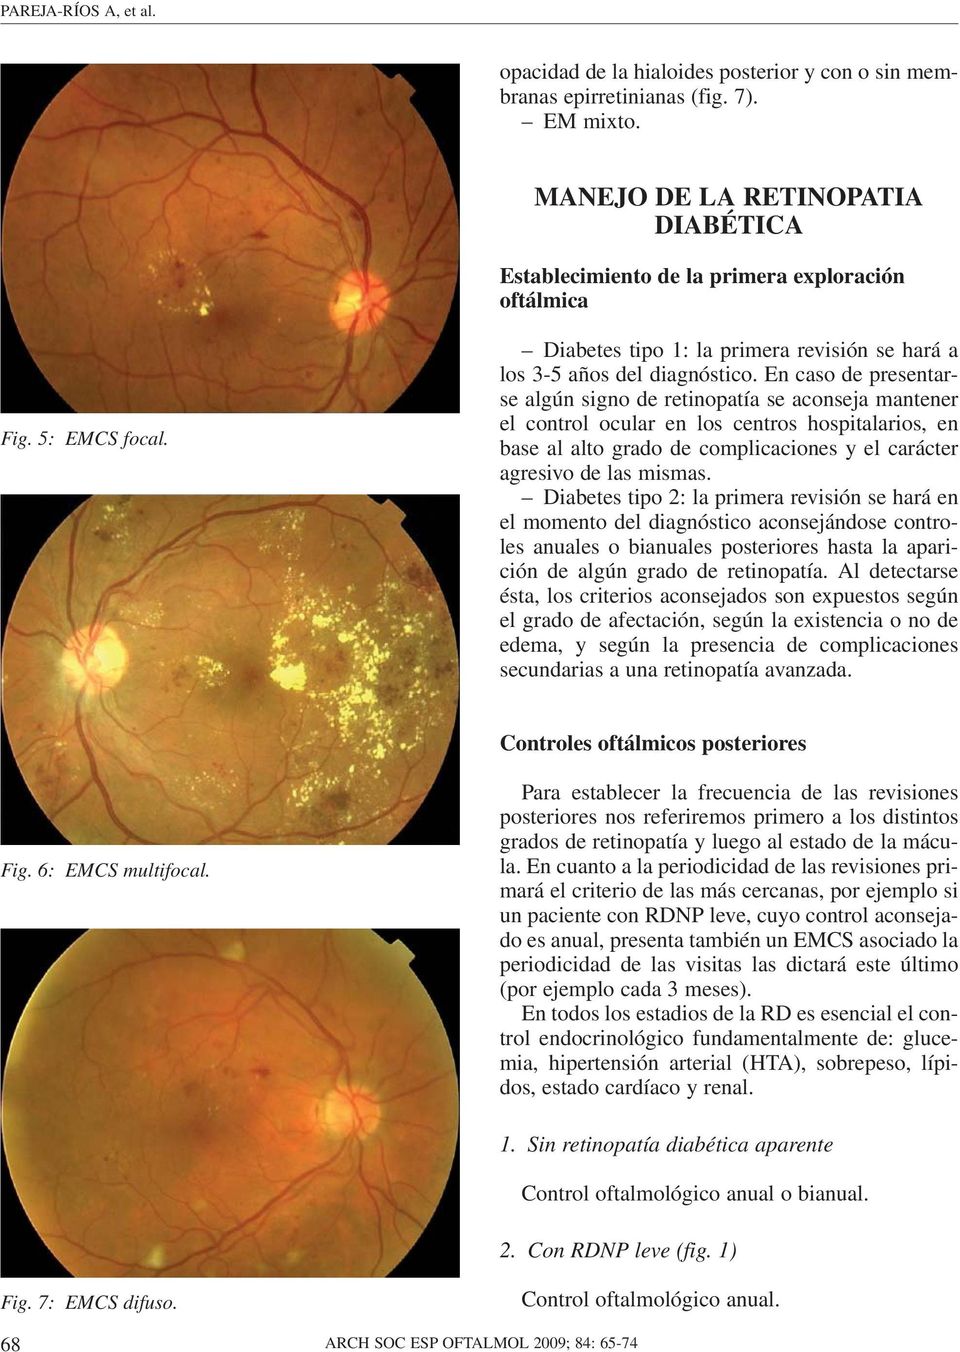 En caso de presentarse algún signo de retinopatía se aconseja mantener el control ocular en los centros hospitalarios, en base al alto grado de complicaciones y el carácter agresivo de las mismas.